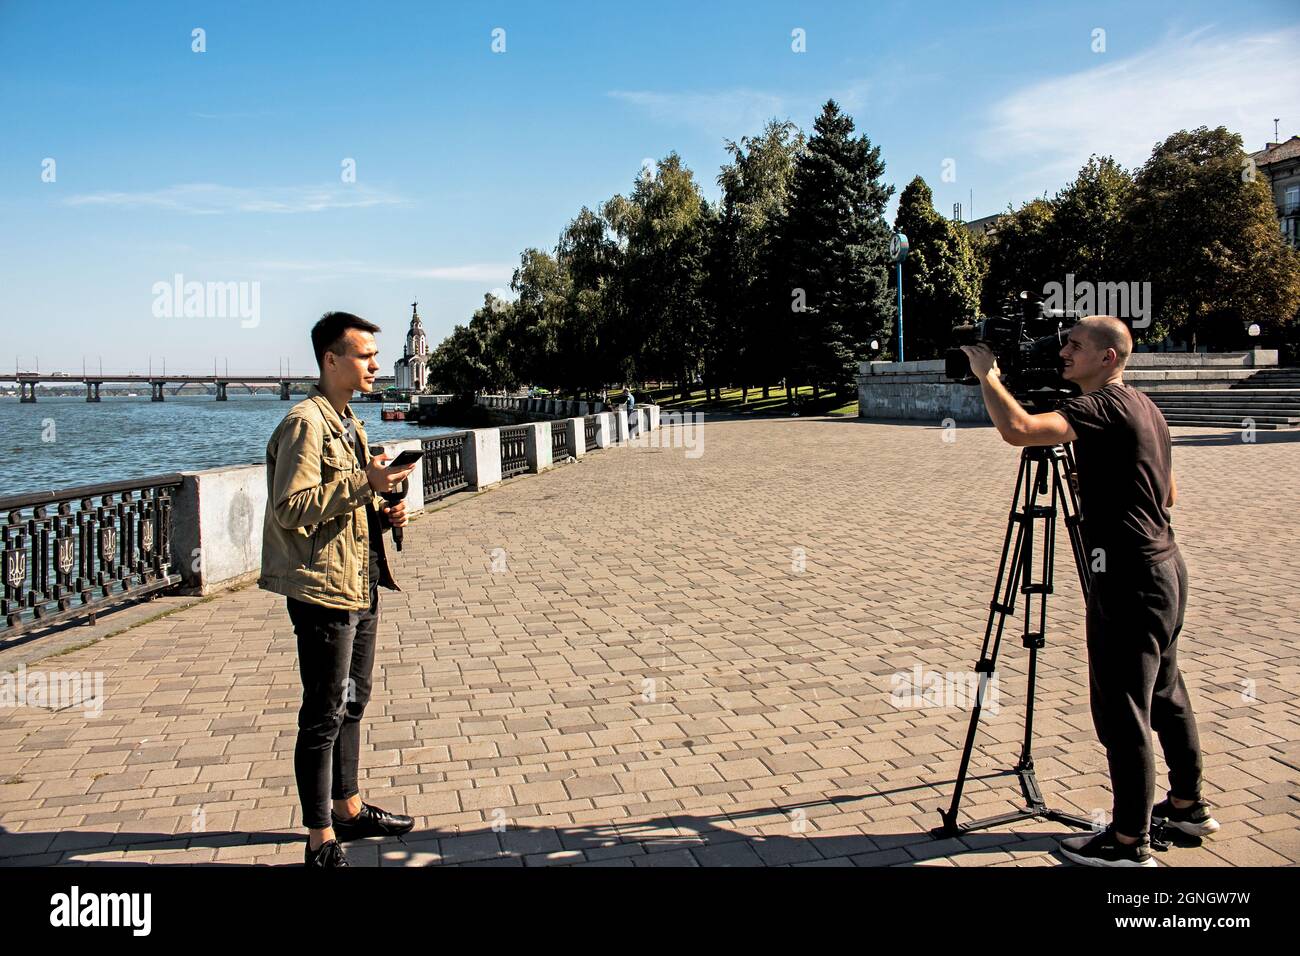 Dnepropetrovsk, Ucrania - 09.17.2021: Los periodistas de televisión locales están filmando un tema ambiental. Se formó una nueva isla en el río Dnieper. Foto de stock